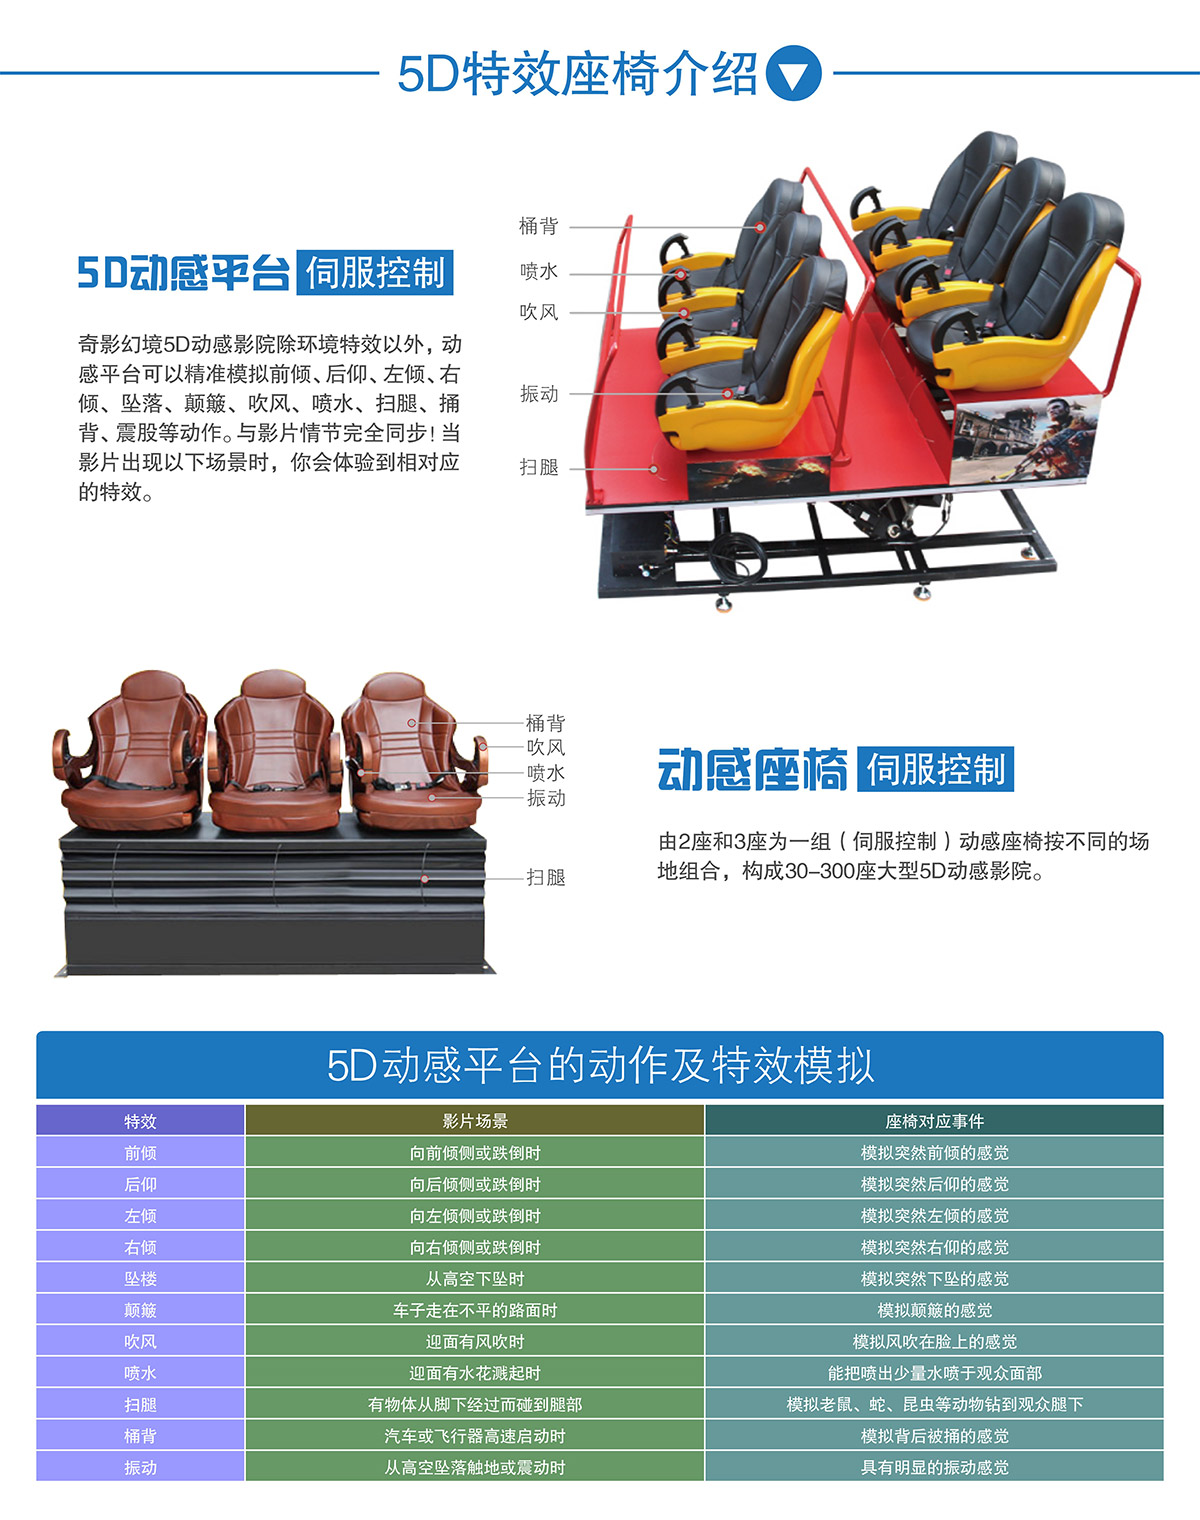 奇影幻境中大型5D动感特效座椅介绍.jpg